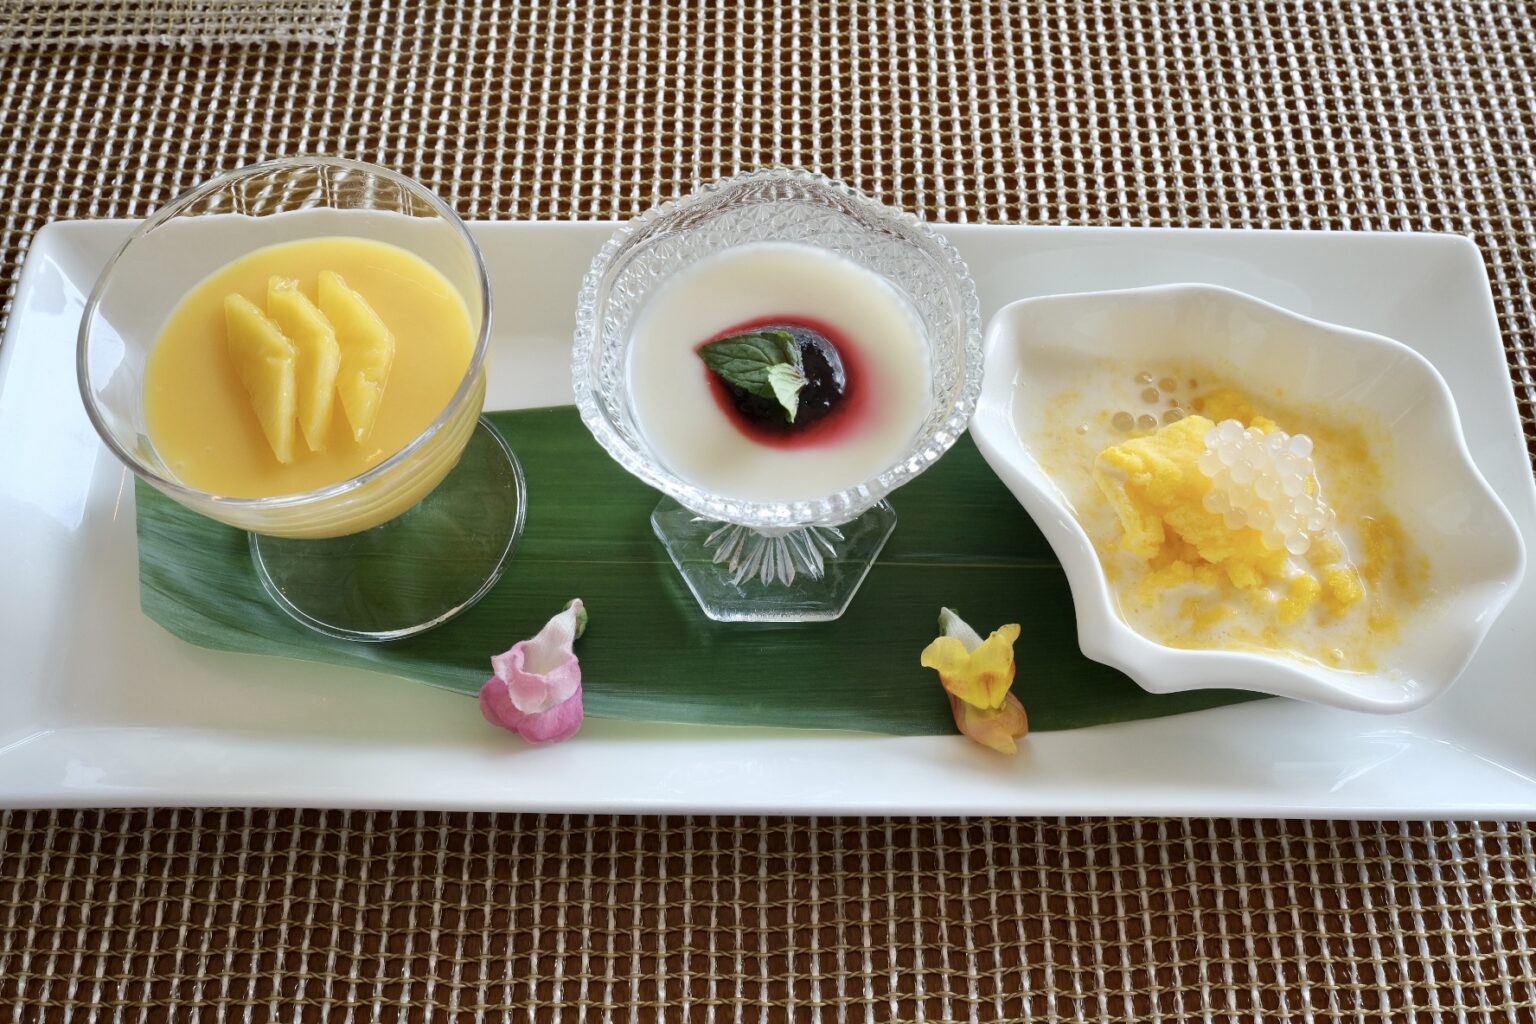 左から「マンゴープリン」「杏仁豆腐　ハスカップソース」「タピオカ入り台湾式スノーアイス」。